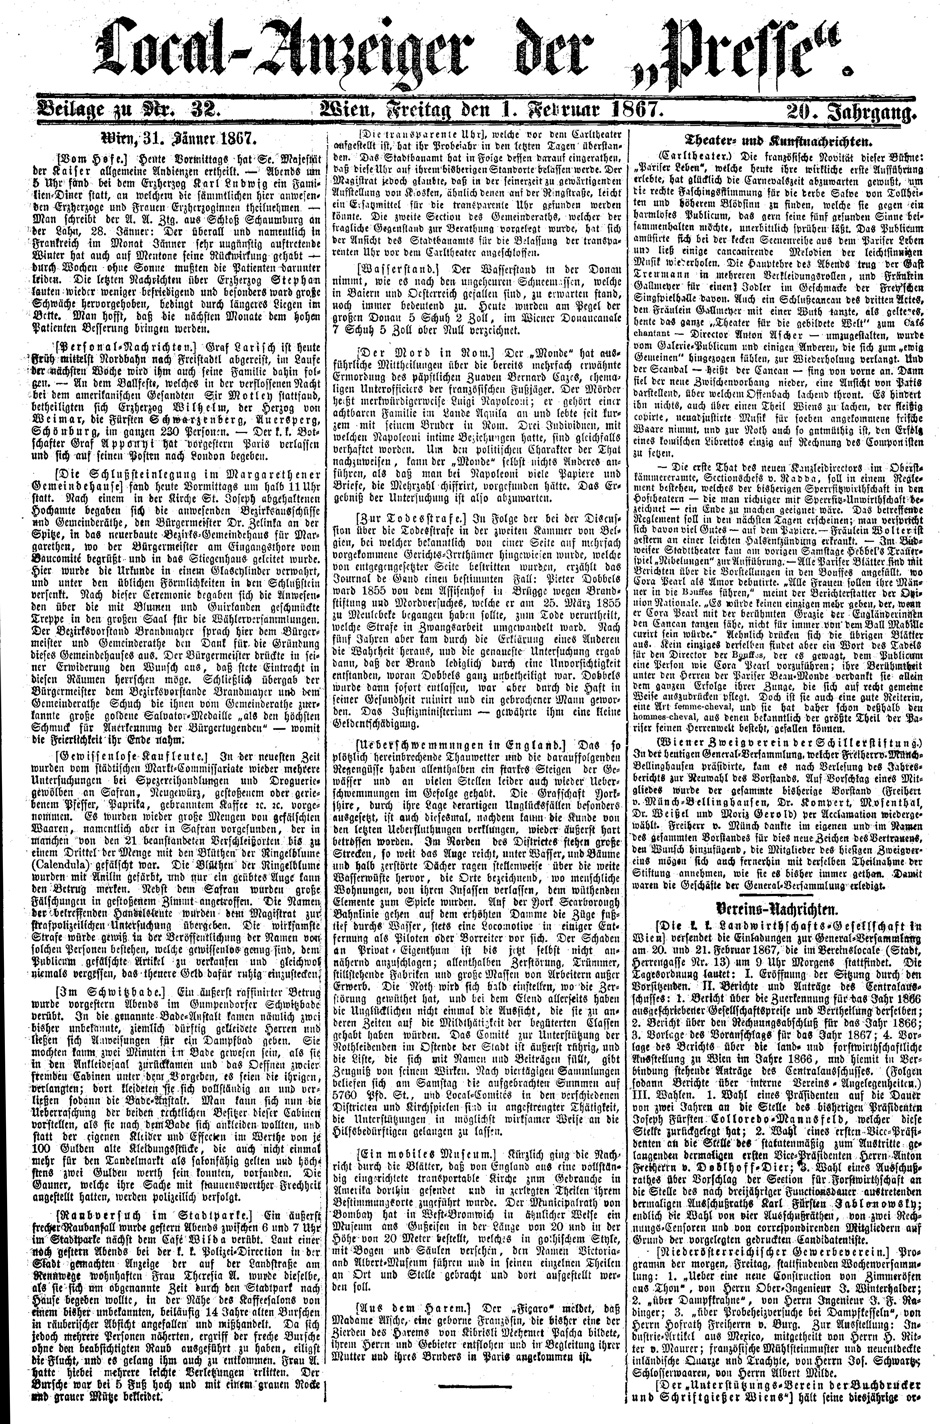 Archivbild: Die Presse, Wien, Freitag, den 1. Februar 1867; Seite 9